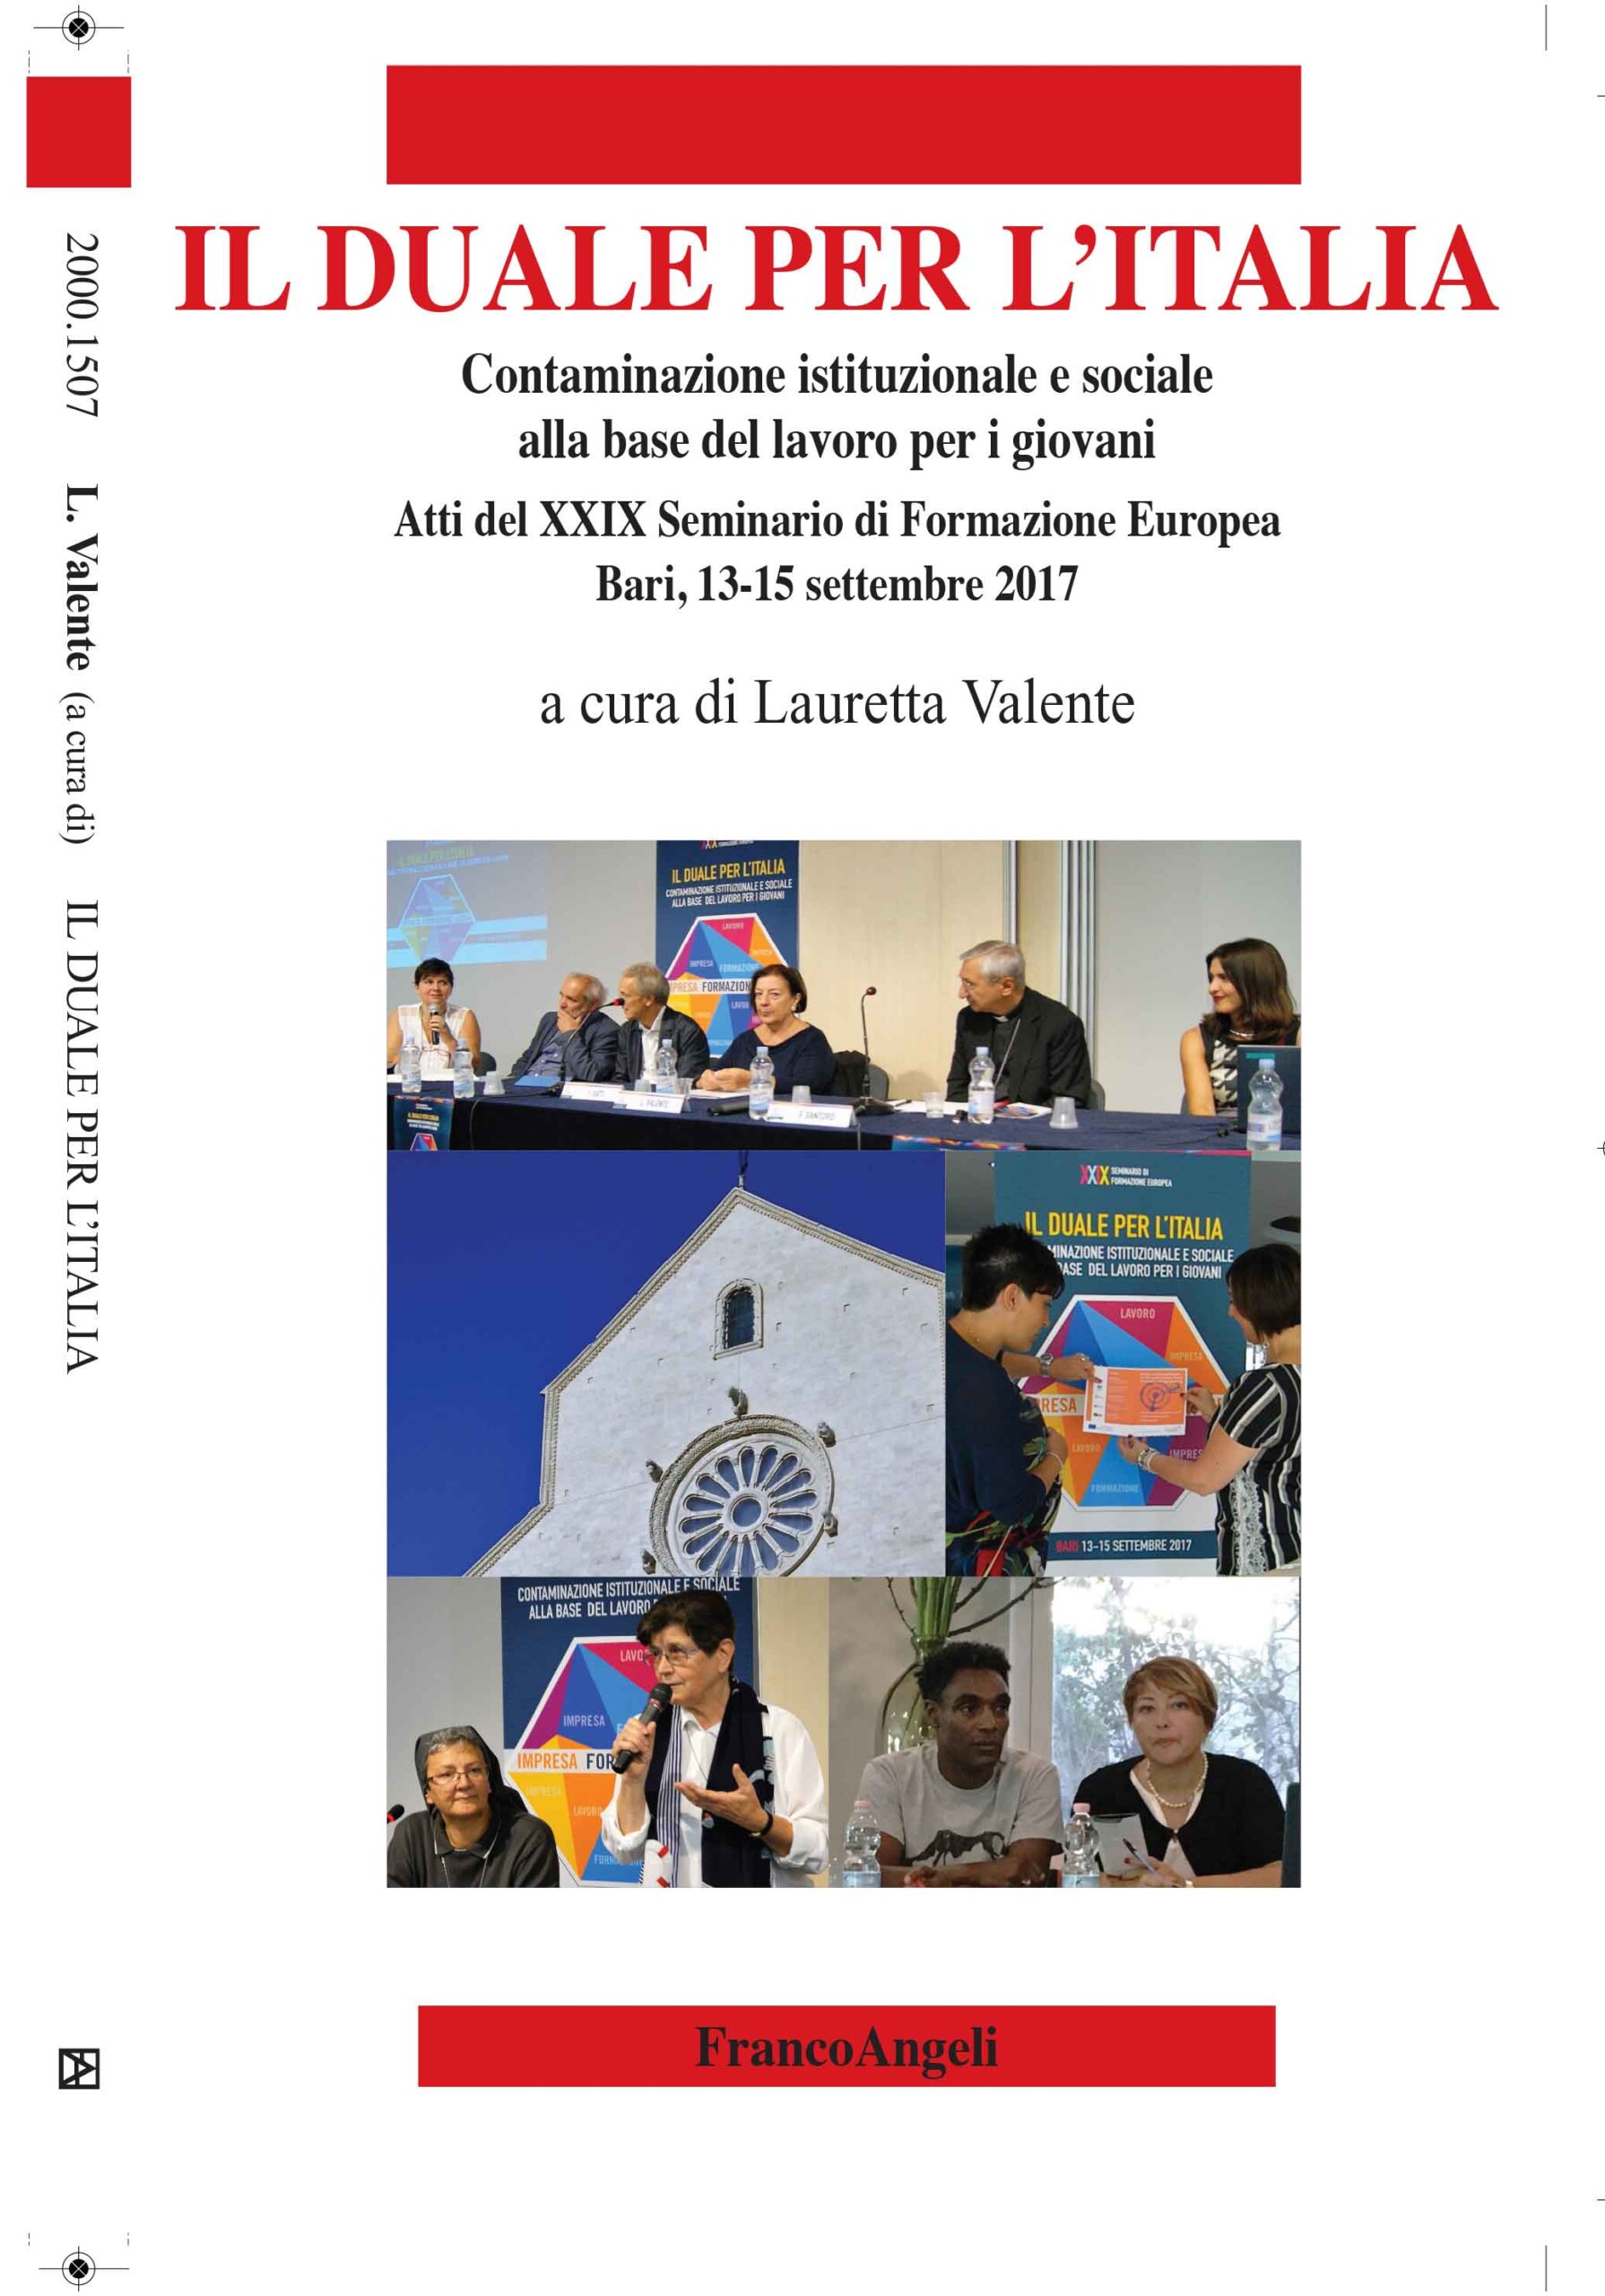 Atti del XXIX Seminario di Formazione Europea – Il Duale per l’Italia, Contaminazione istituzionale e sociale alla base del lavoro per i giovani, Bari 13-15 settembre 2017